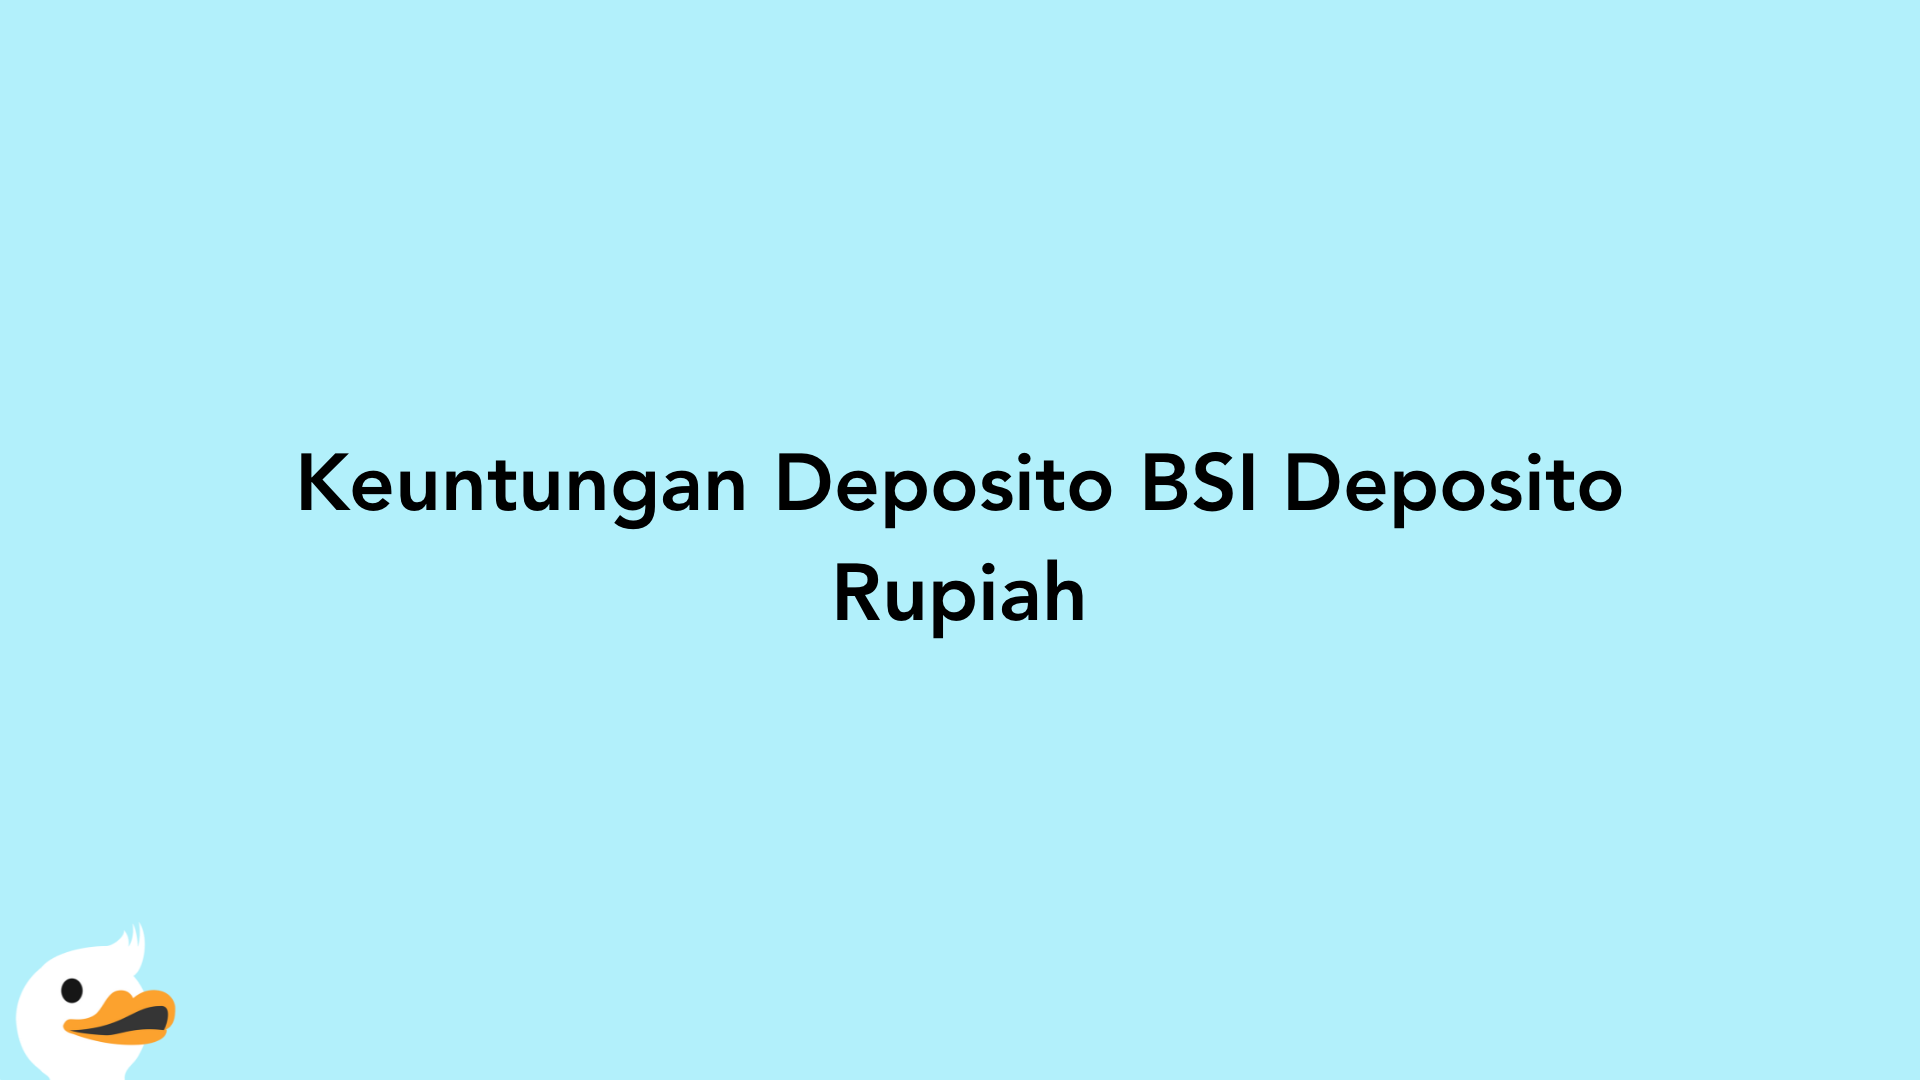 Keuntungan Deposito BSI Deposito Rupiah